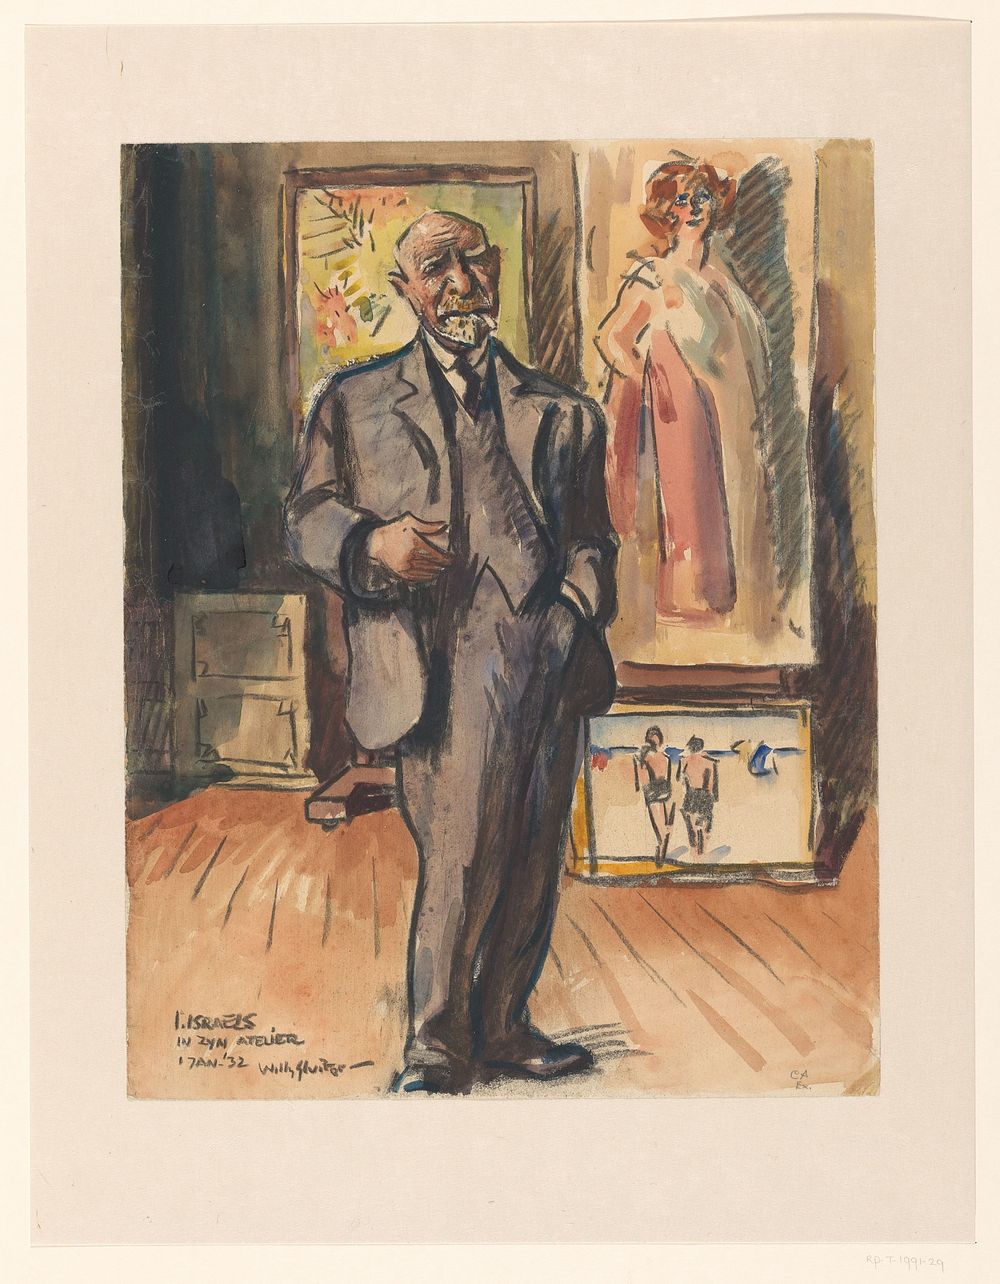 I. Israels in zijn atelier (1932) by Willy Sluiter